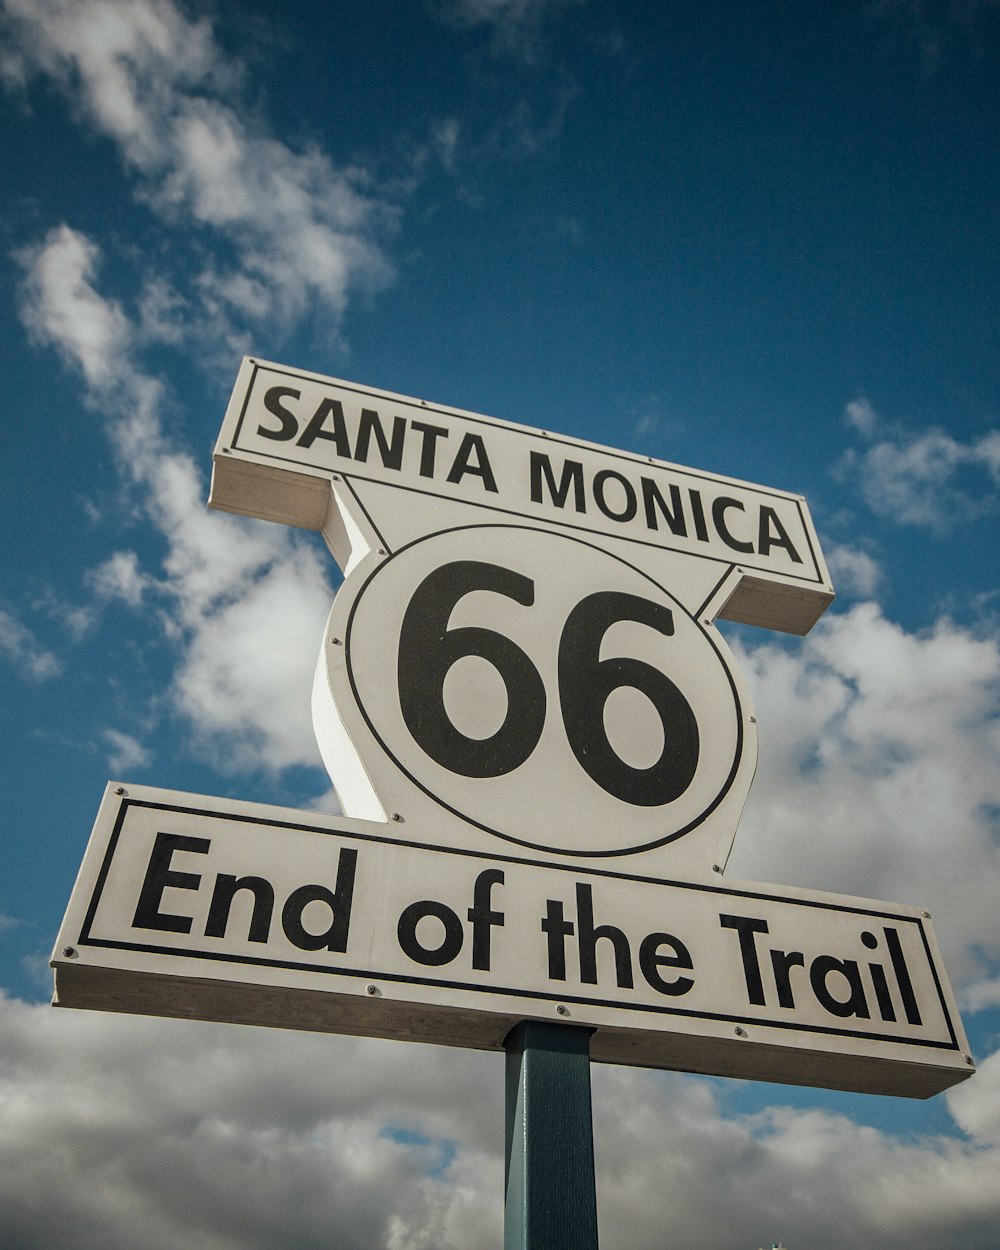 señalización blanca y negra de Santa Monica 66 End of the Trail